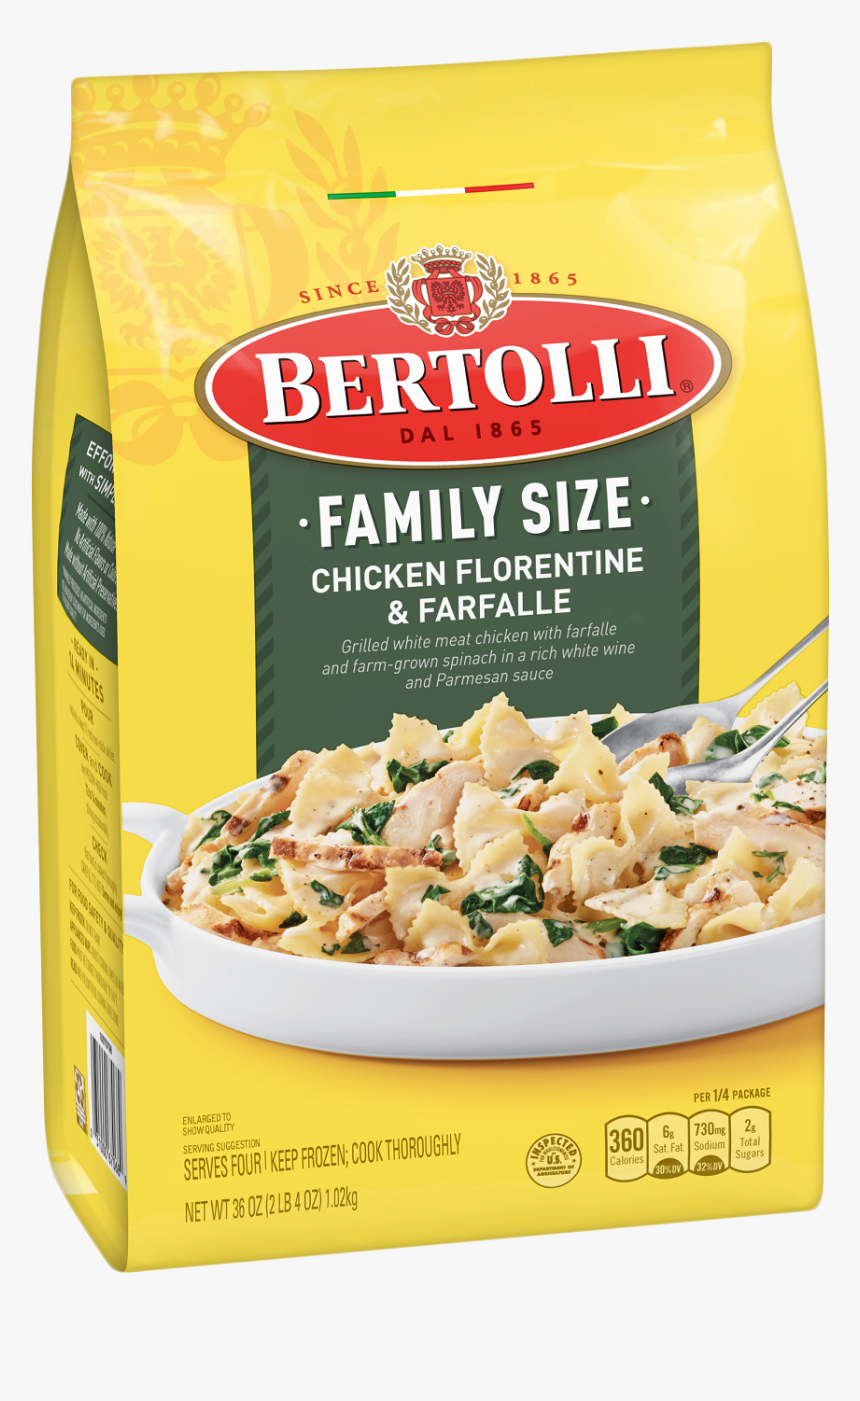 Bertolli Frozen Meals, HD Png Download, Free Download